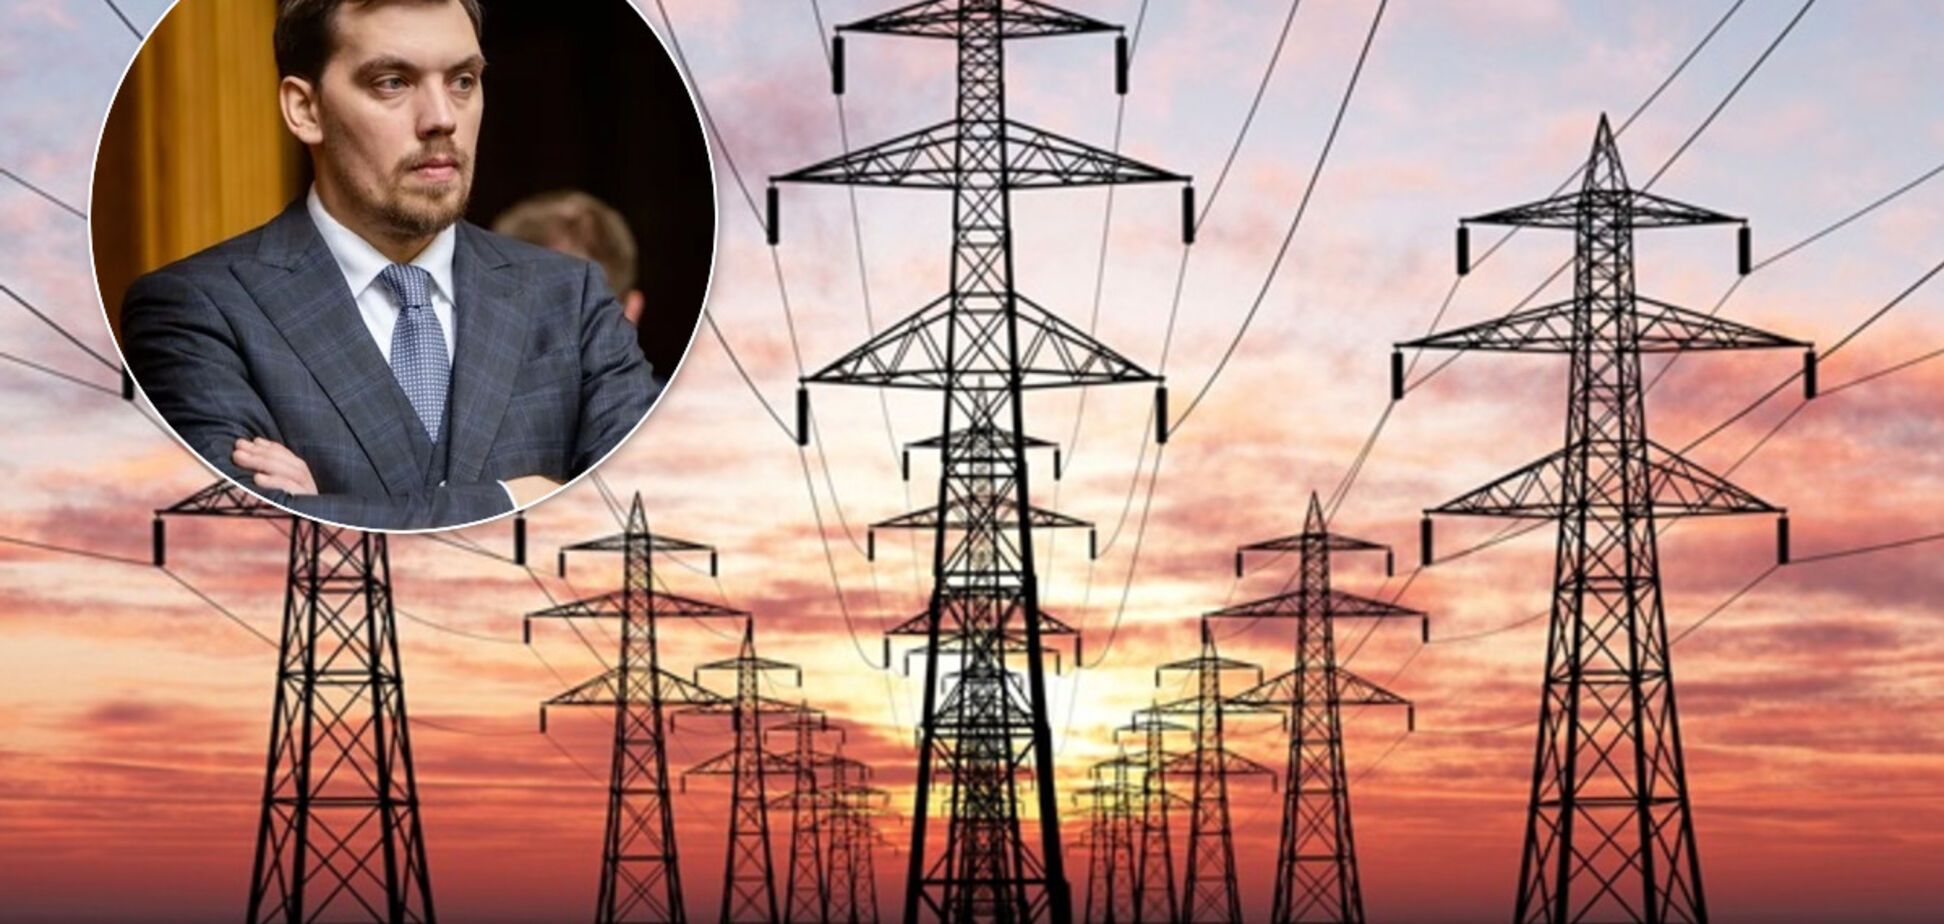 Кабмін Гончарука доведе енергетику до дефолту? Через величезний дефіцит тарифи на струм можуть злетіти